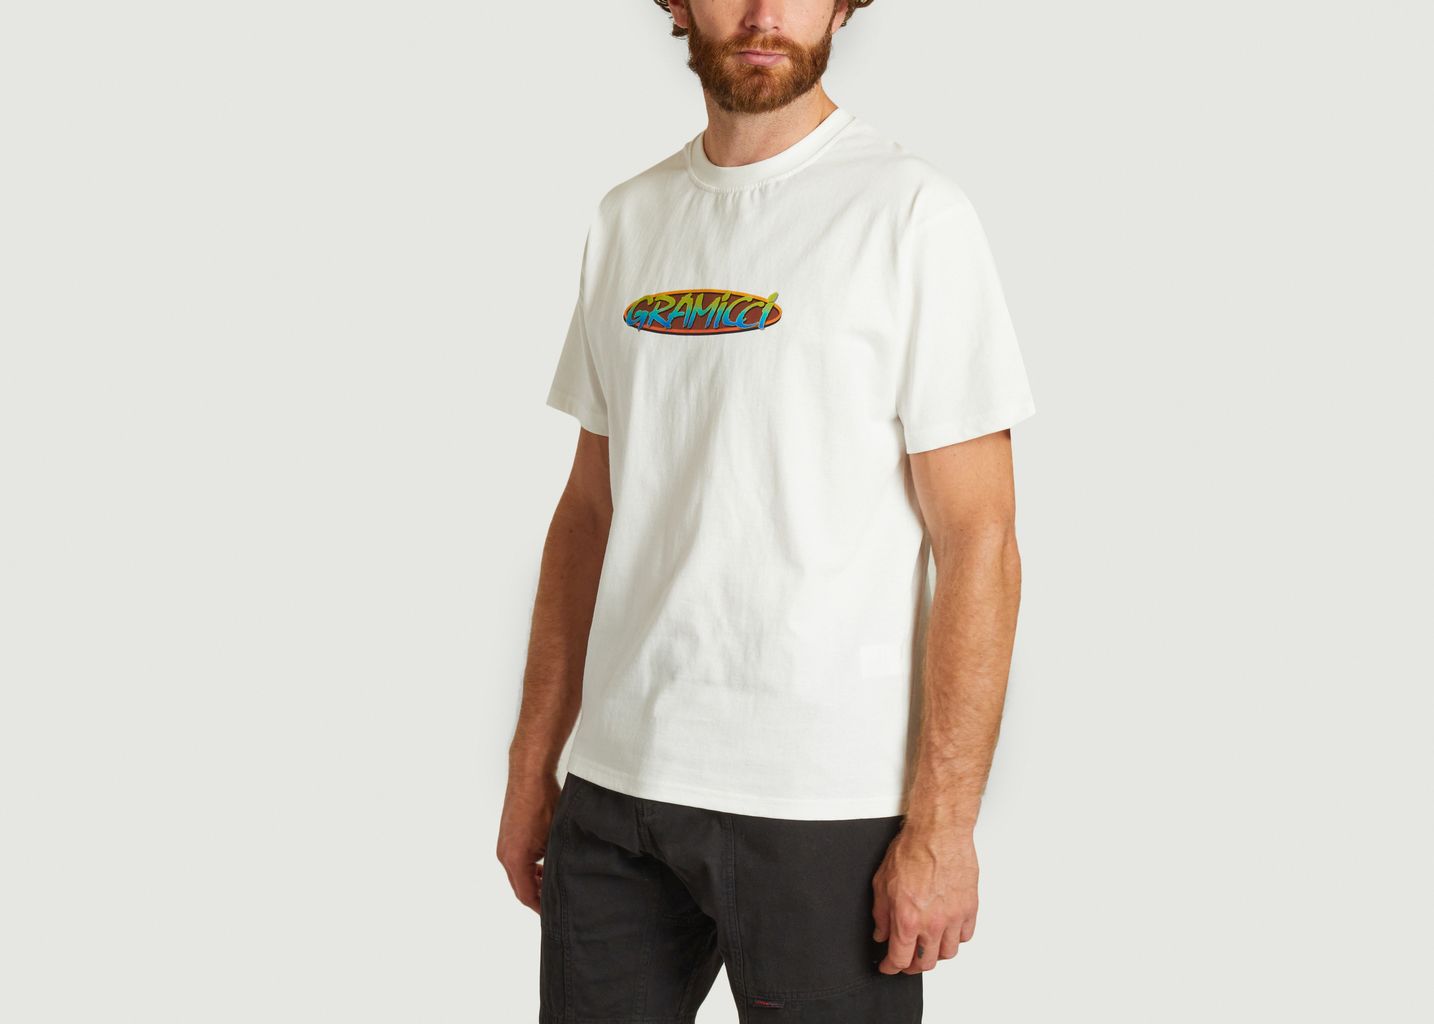 Oval T-shirt - Gramicci